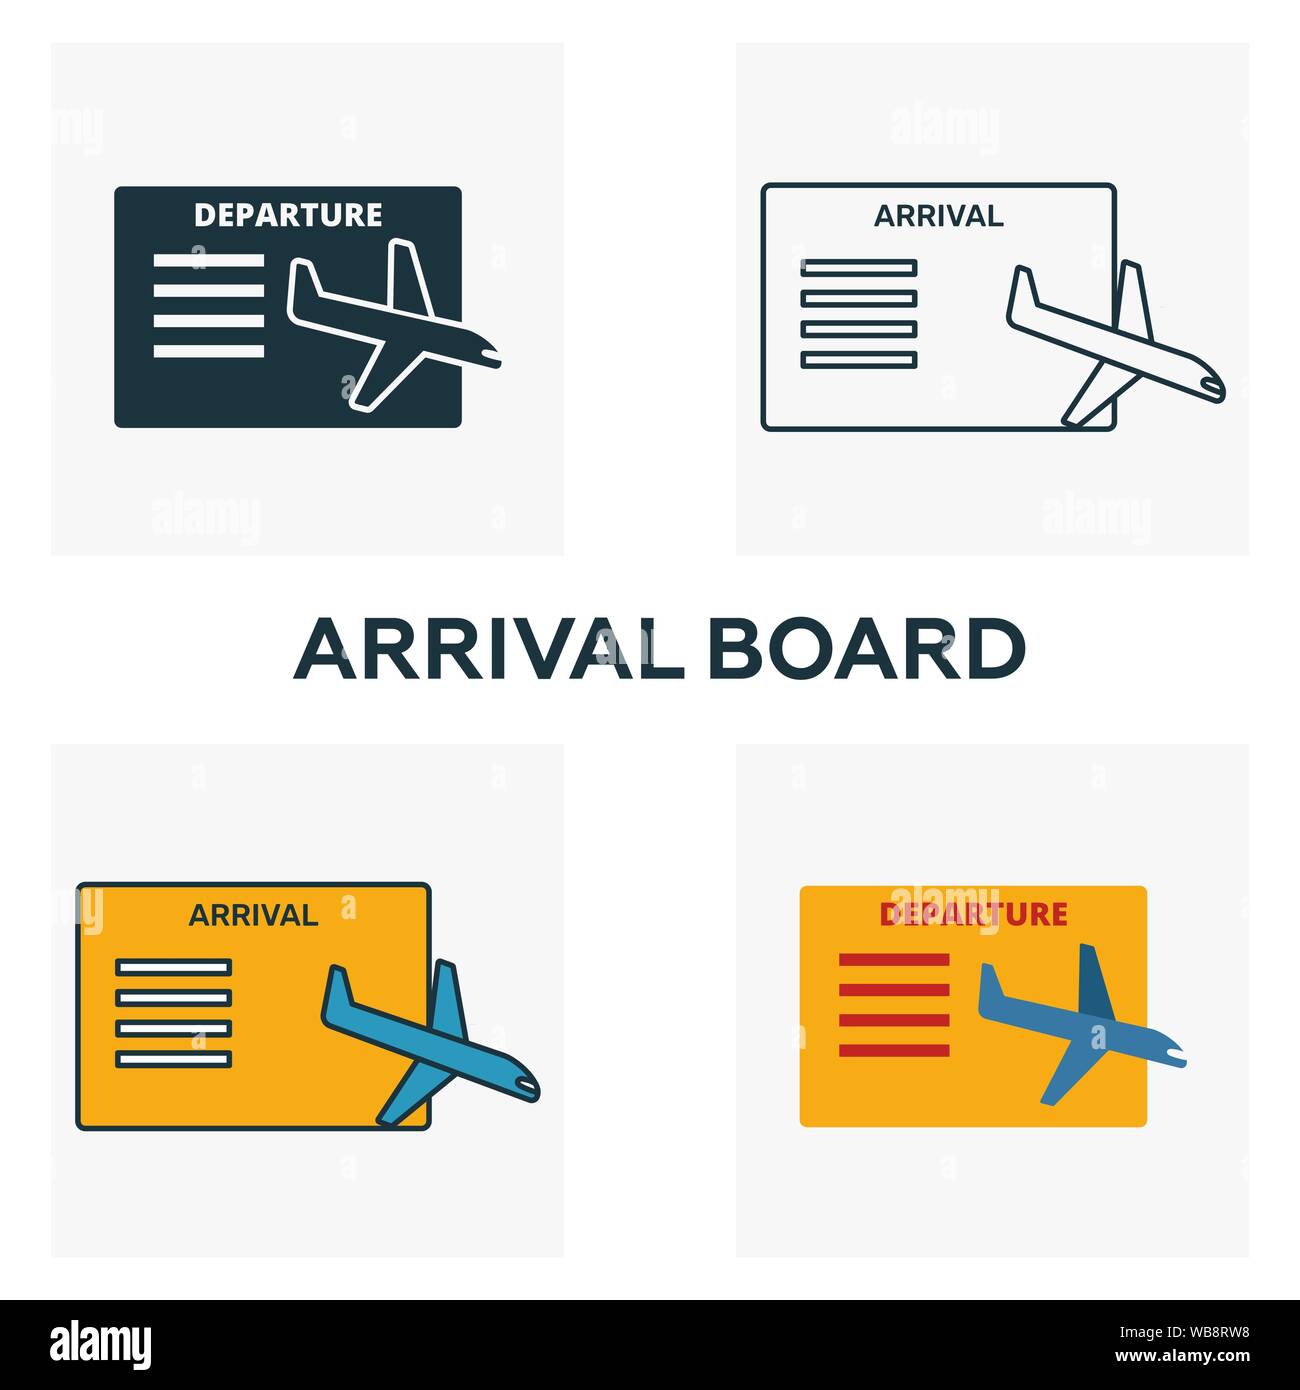 Anreise Board Icon Set. Vier Elemente in verschiedenen Stilen vom Flughafen icons Collection. Kreative Anreise board Icons, Outline, farbige und flach Stock Vektor